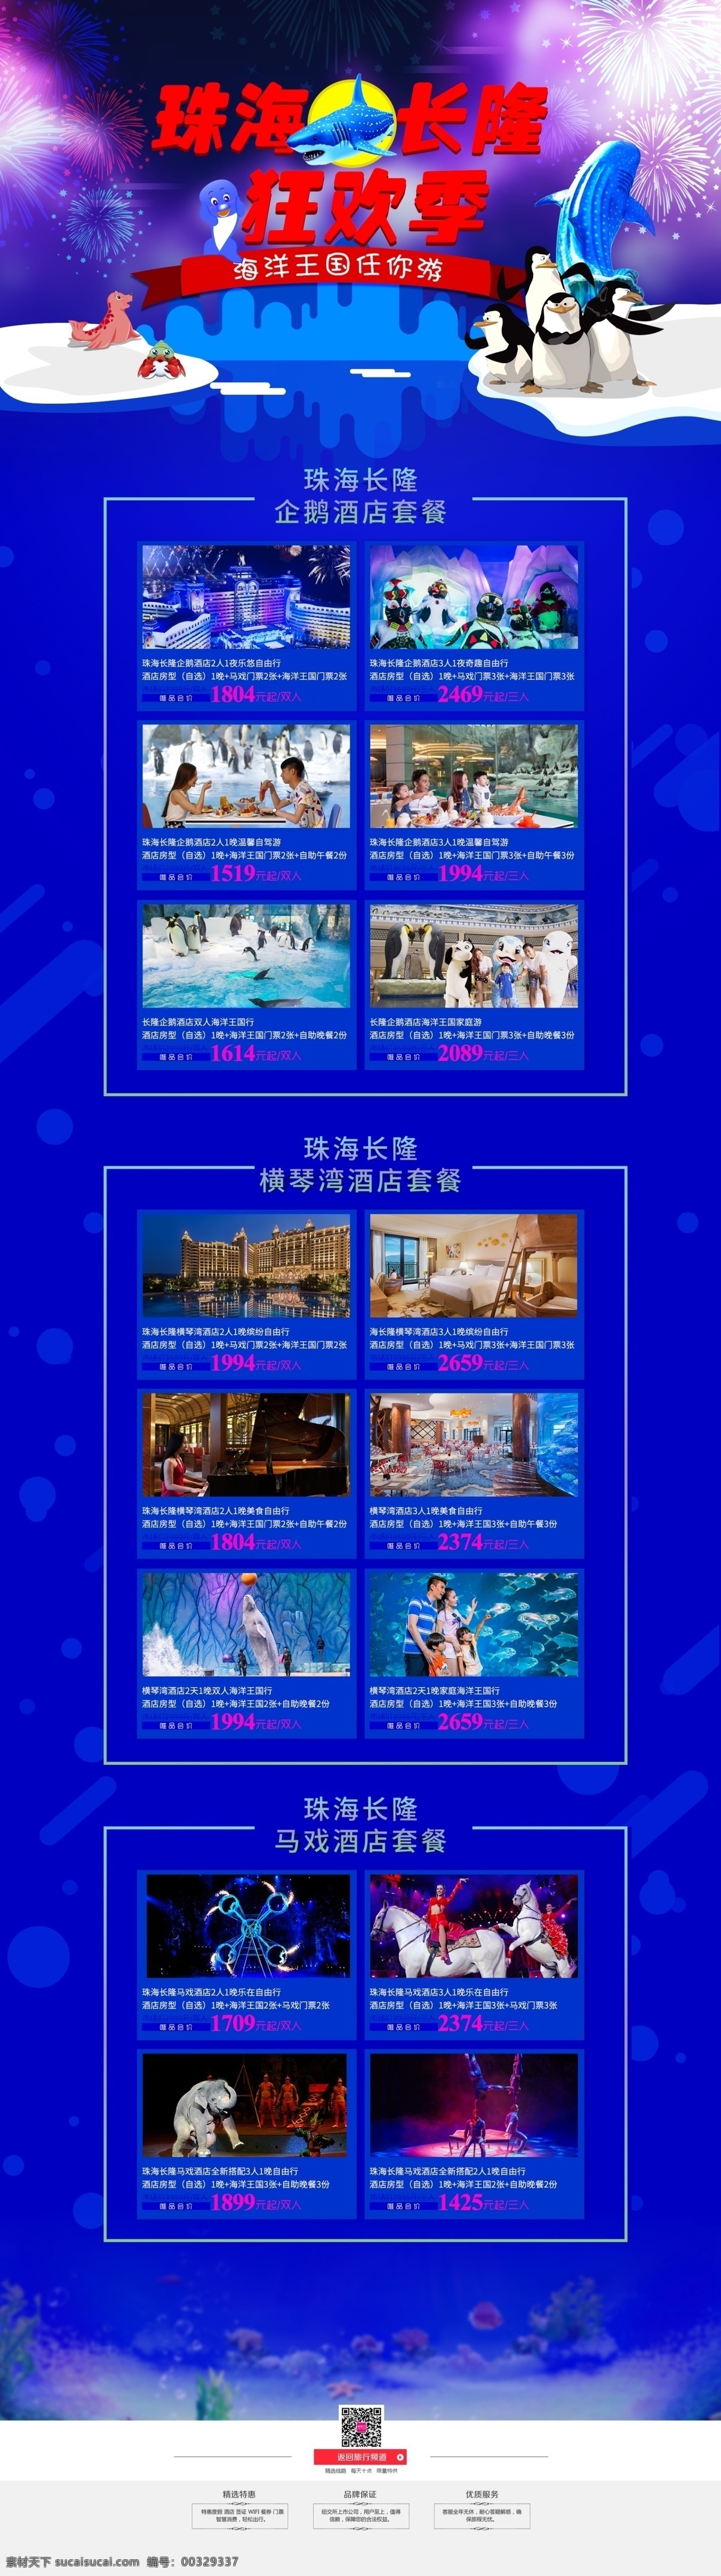 旅游活动专题 旅游 活动专题 珠海长隆 蓝色